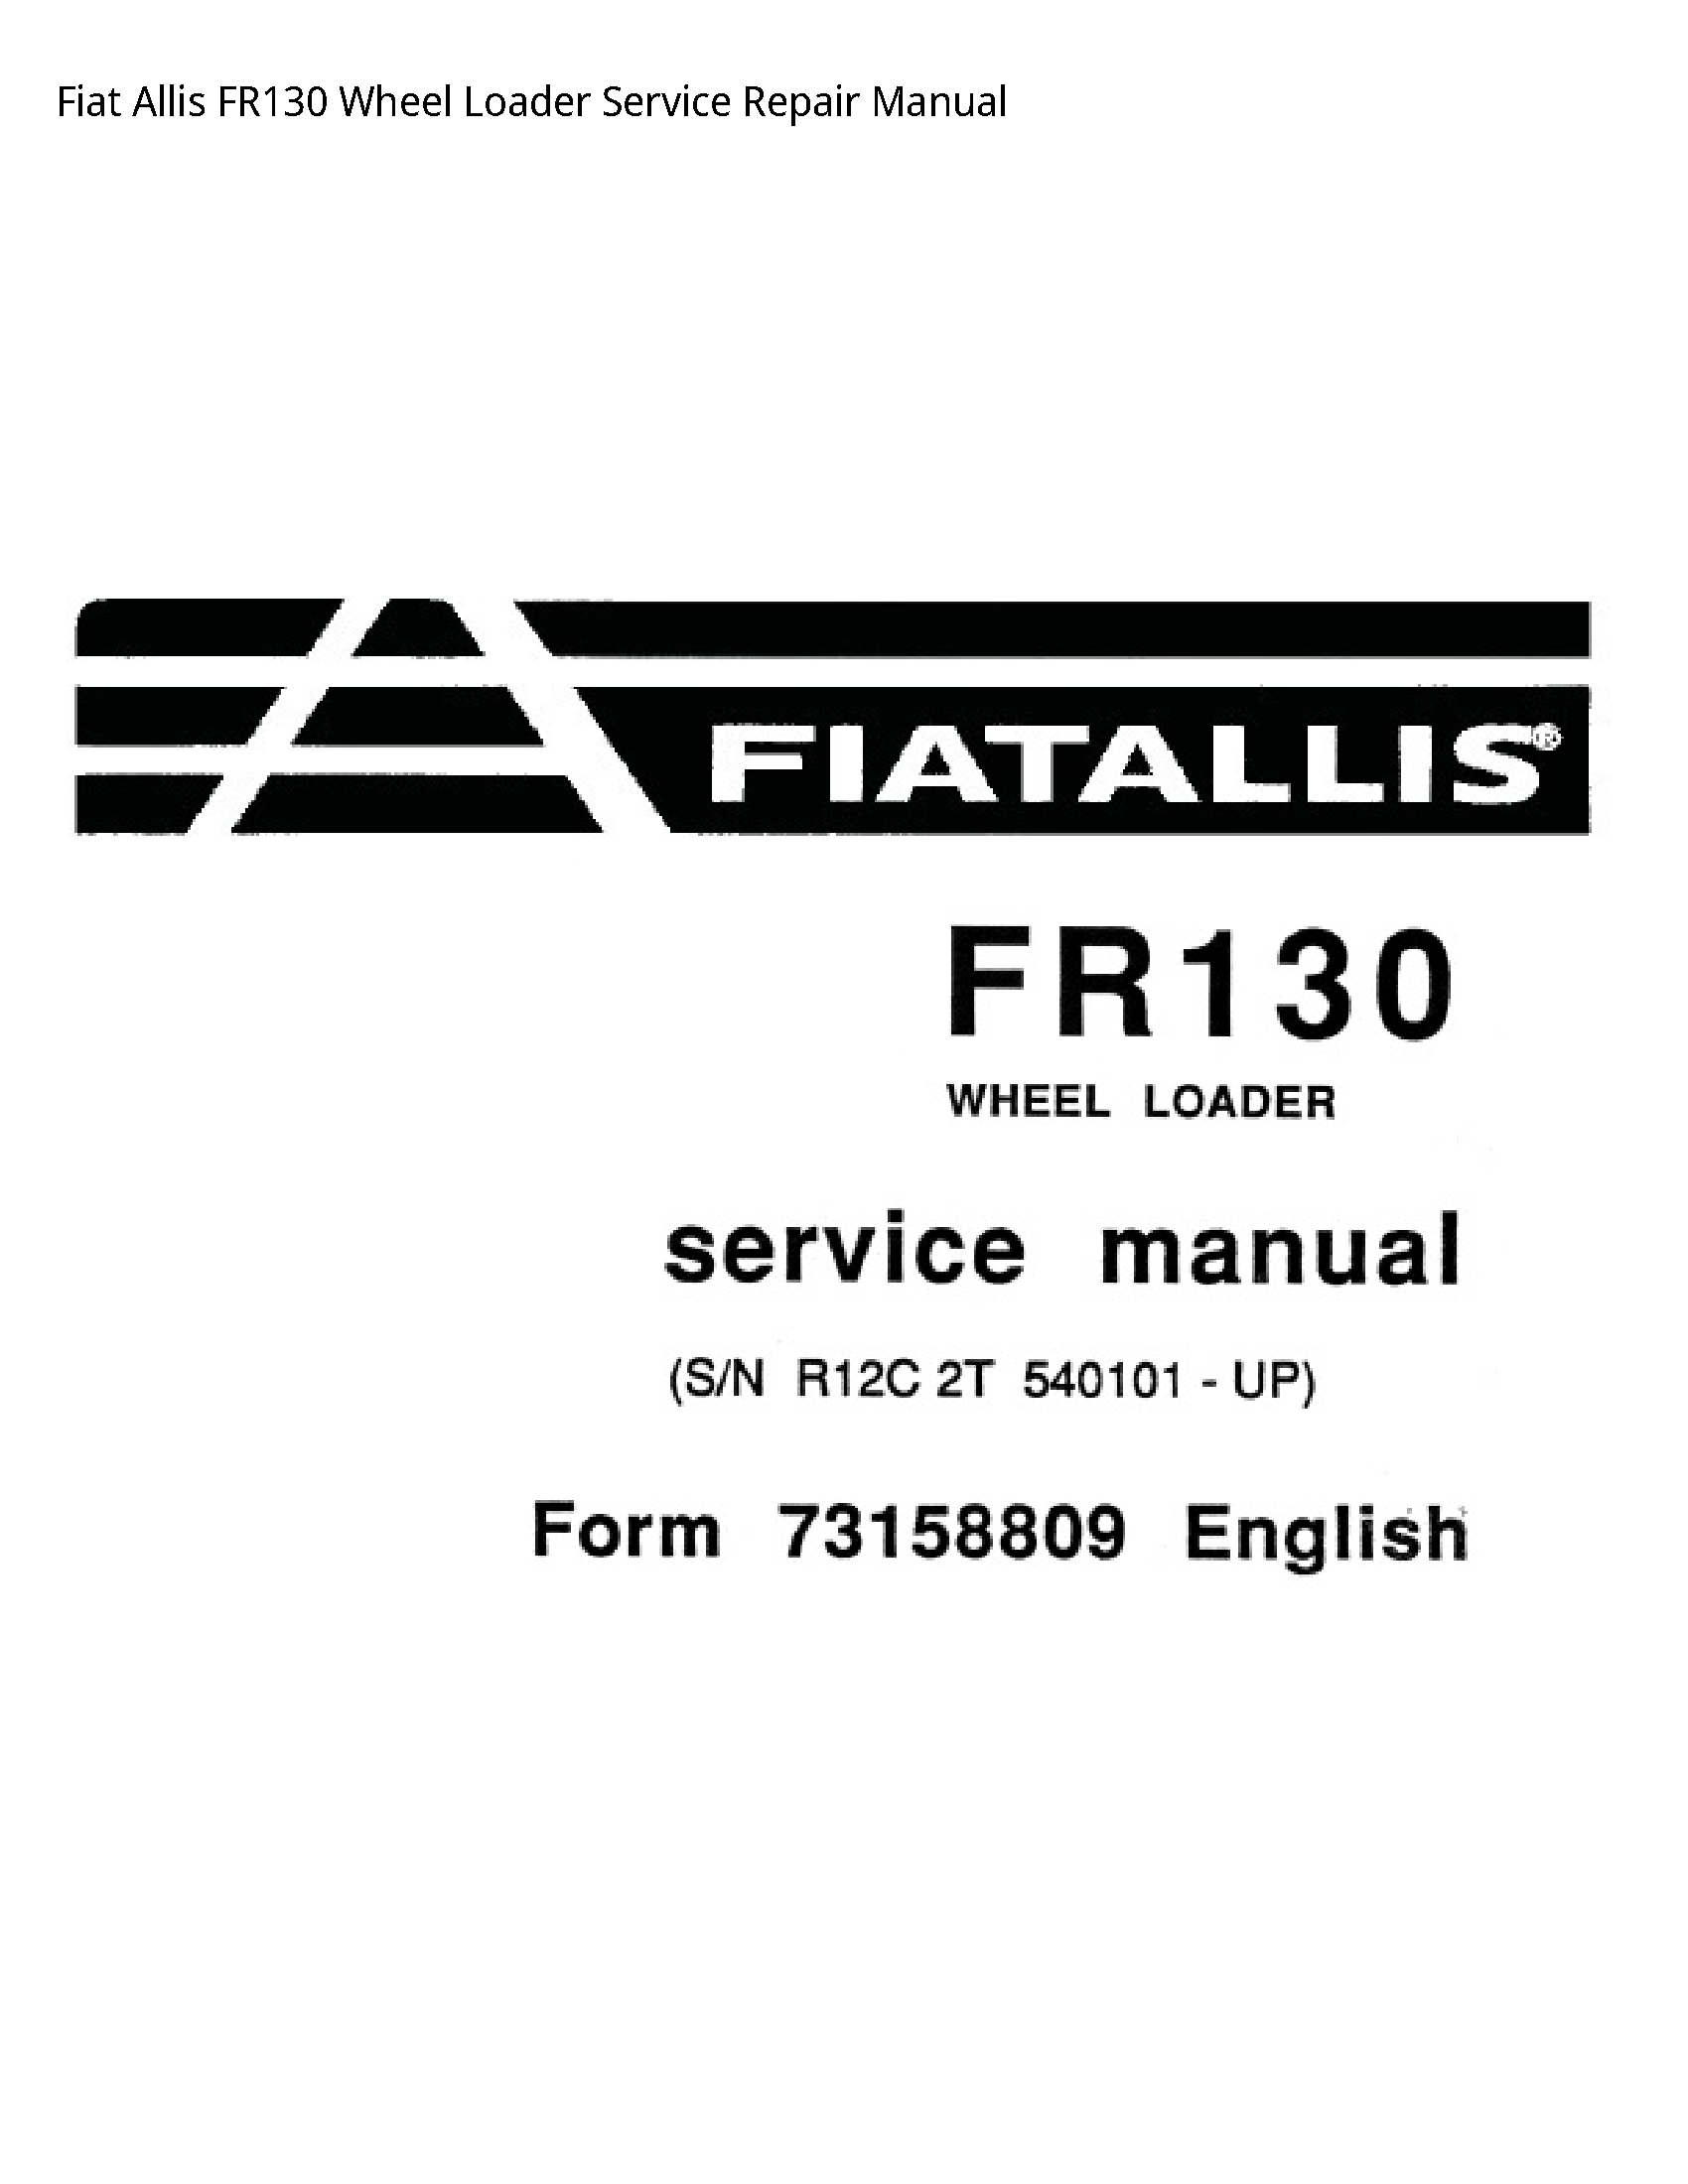 Fiat Allis FR130 Wheel Loader manual